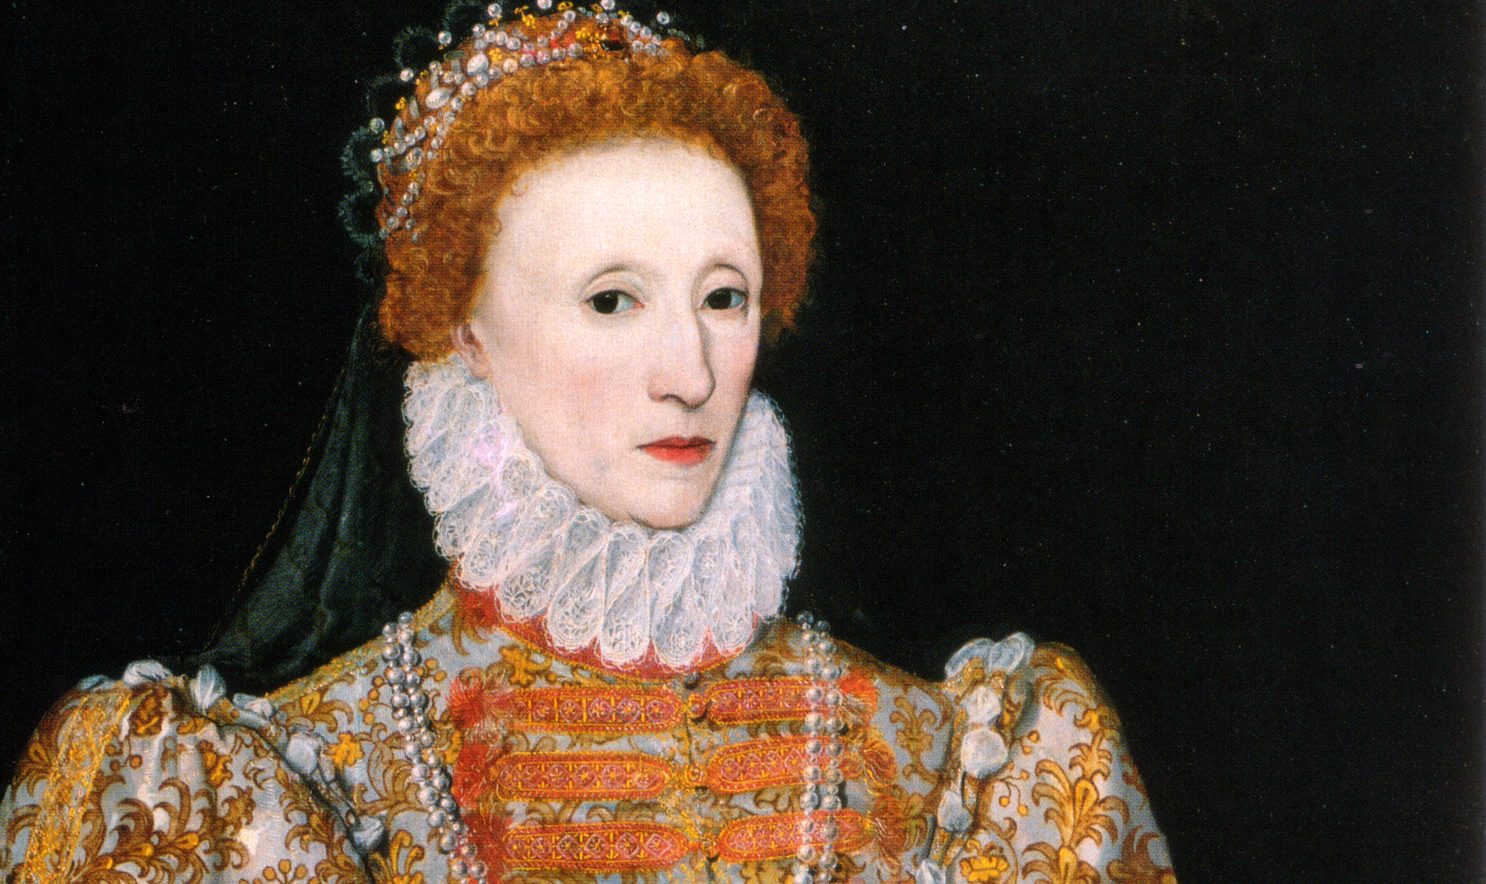 Un 7 de septiembre de 1533 nace Isabel I de Inglaterra